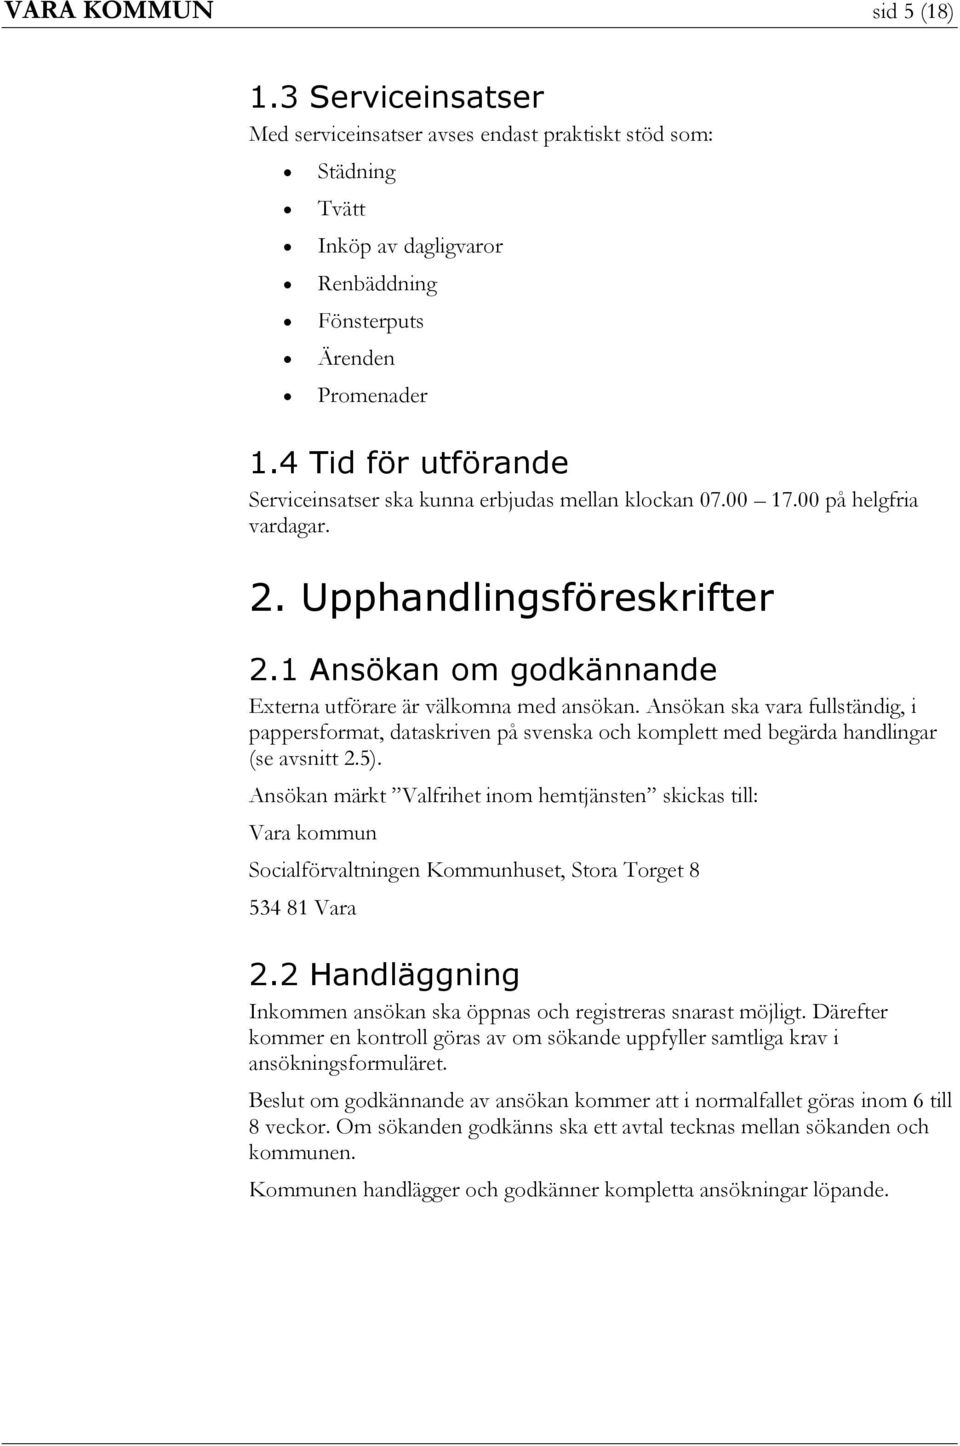 Ansökan ska vara fullständig, i pappersformat, dataskriven på svenska och komplett med begärda handlingar (se avsnitt 2.5).